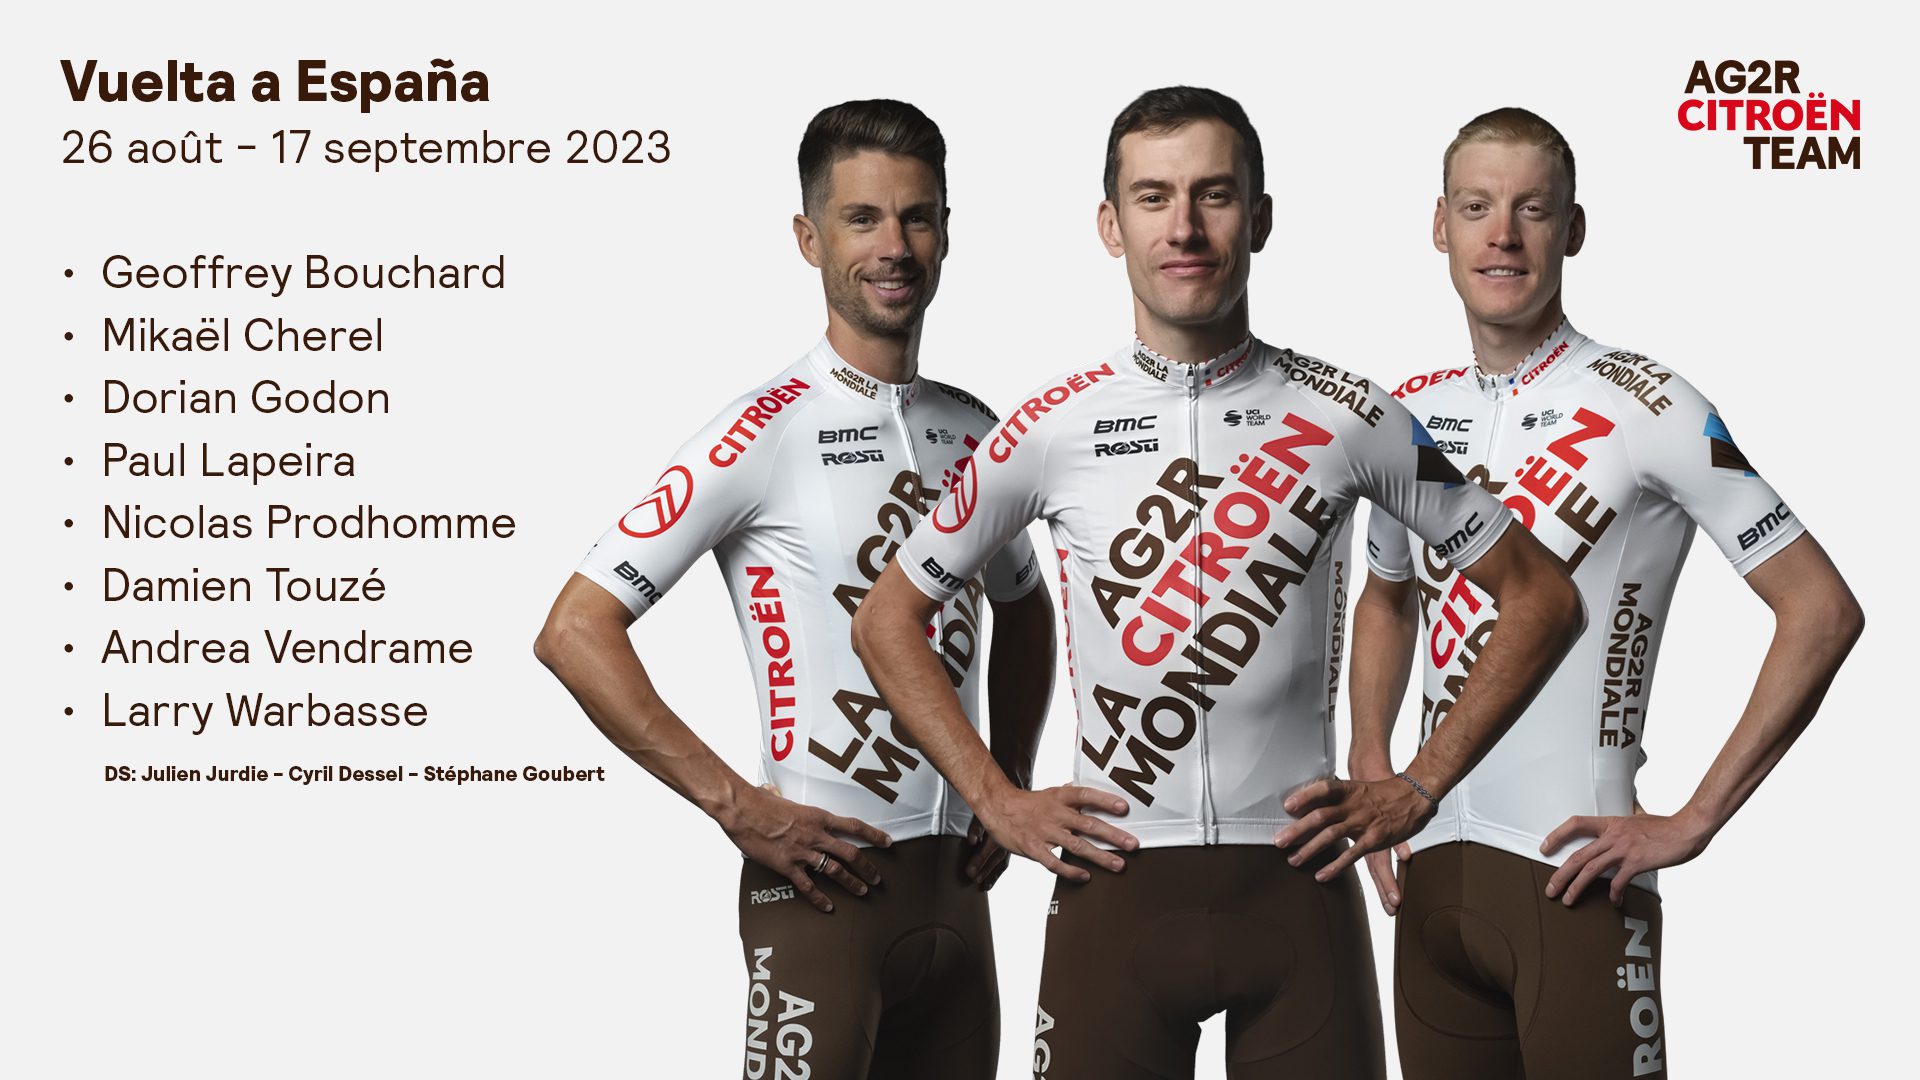 Vuelta a Espana (26 août – 17 septembre)